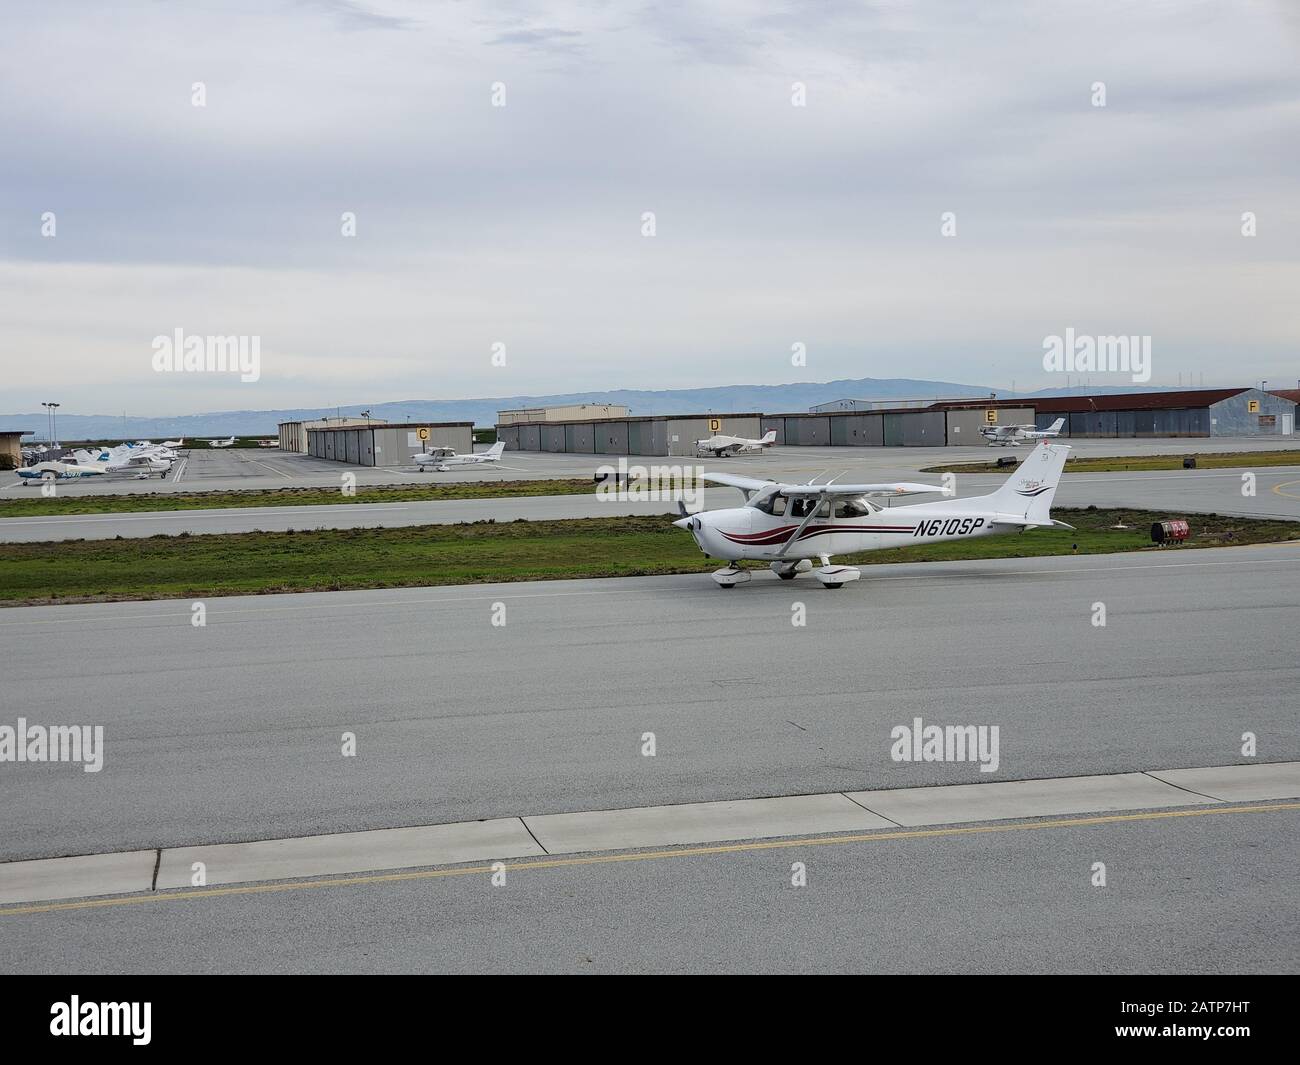 Un petit avion taxi vers la piste de l'aéroport de San Carlos (SQL), un aéroport municipal dans la Silicon Valley, San Carlos, Californie, le 19 janvier 2020. () Banque D'Images